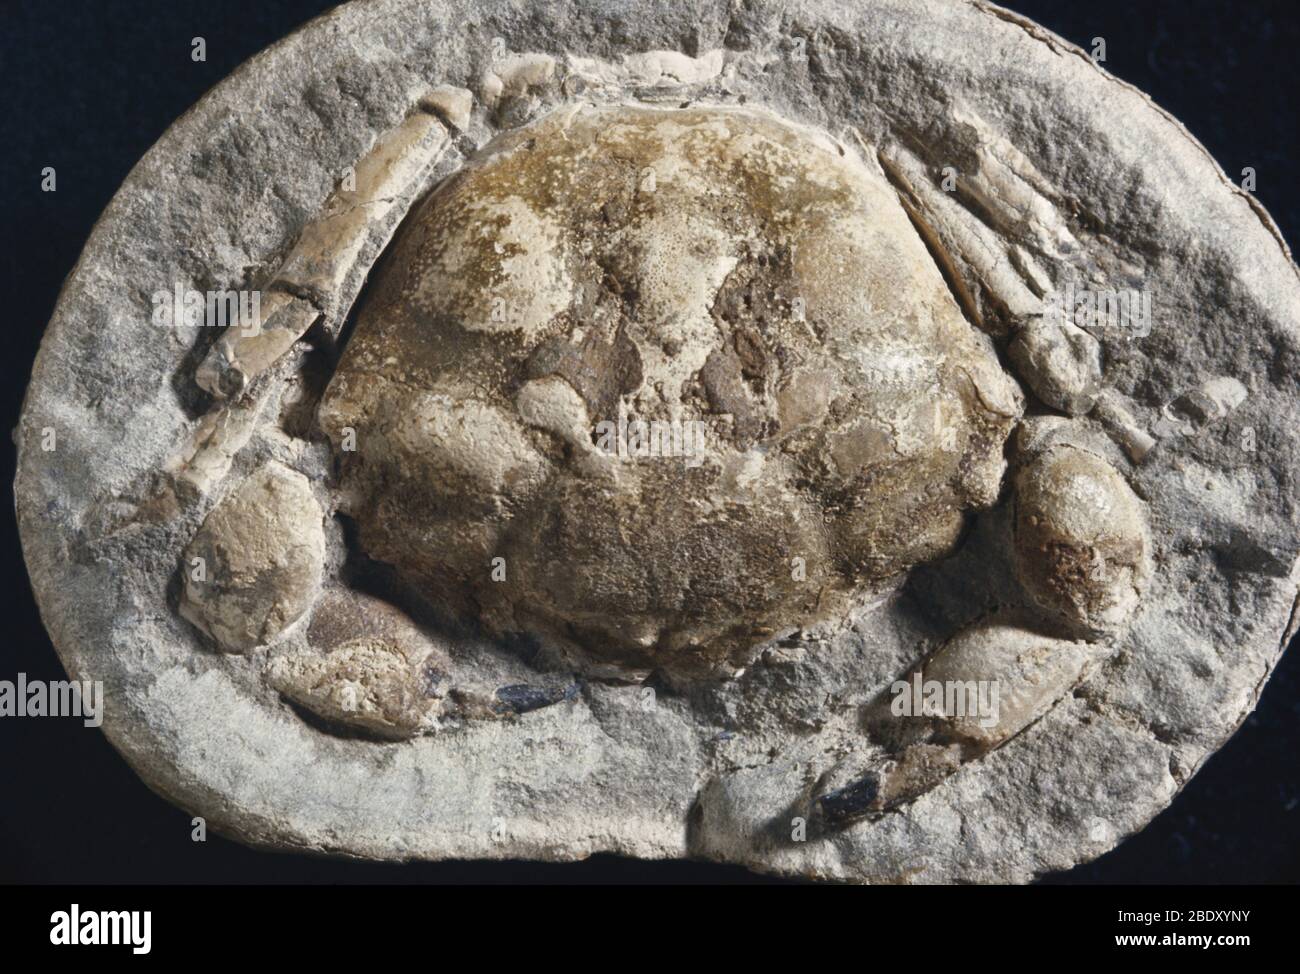 Granchio fossile Foto Stock